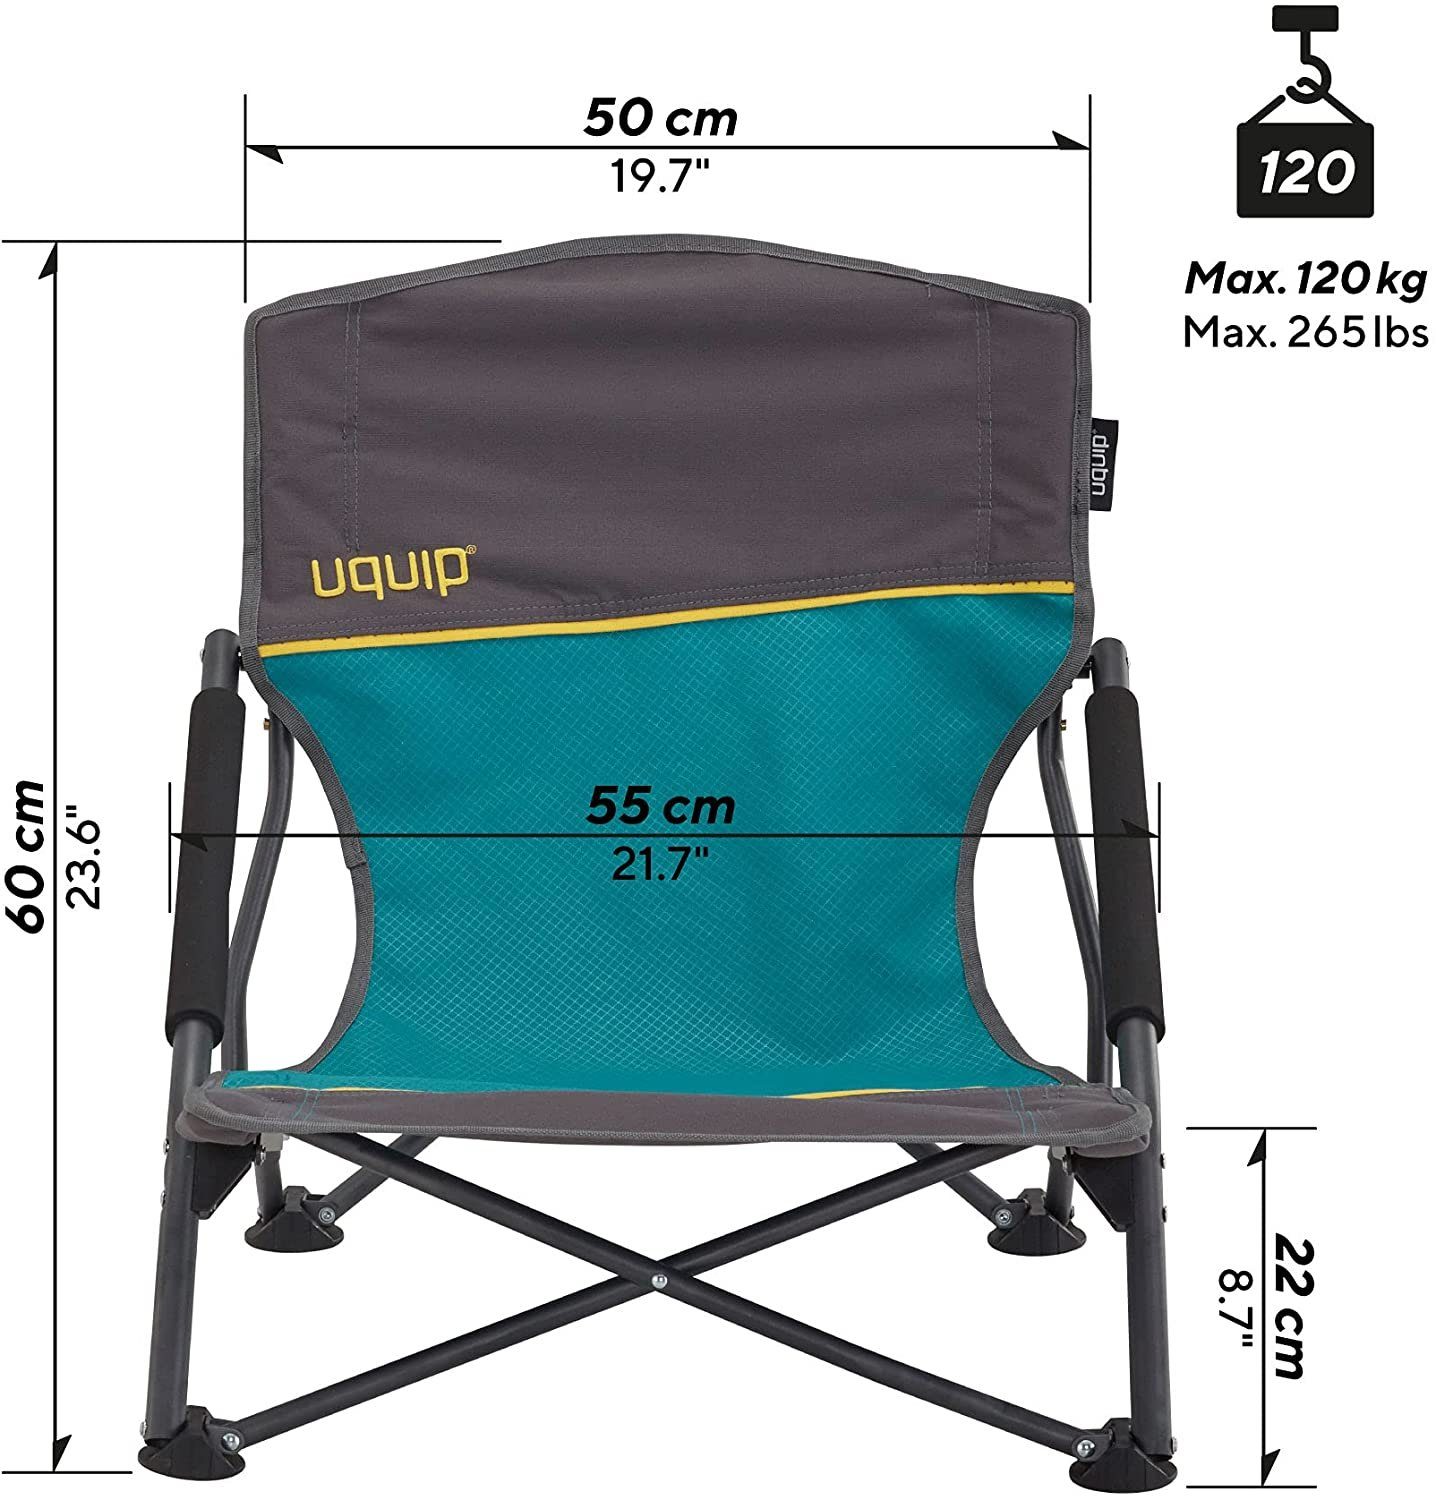 UQUIP Campingstuhl Sandy Strandstuhl - Bequemer Klappstuhl mit Traglast bis  120 kg, niedrige Höhe für bequemen Sitz, breite Füße gegen Einsinken auf  weichem Sand, gepolsterte Armlehnen